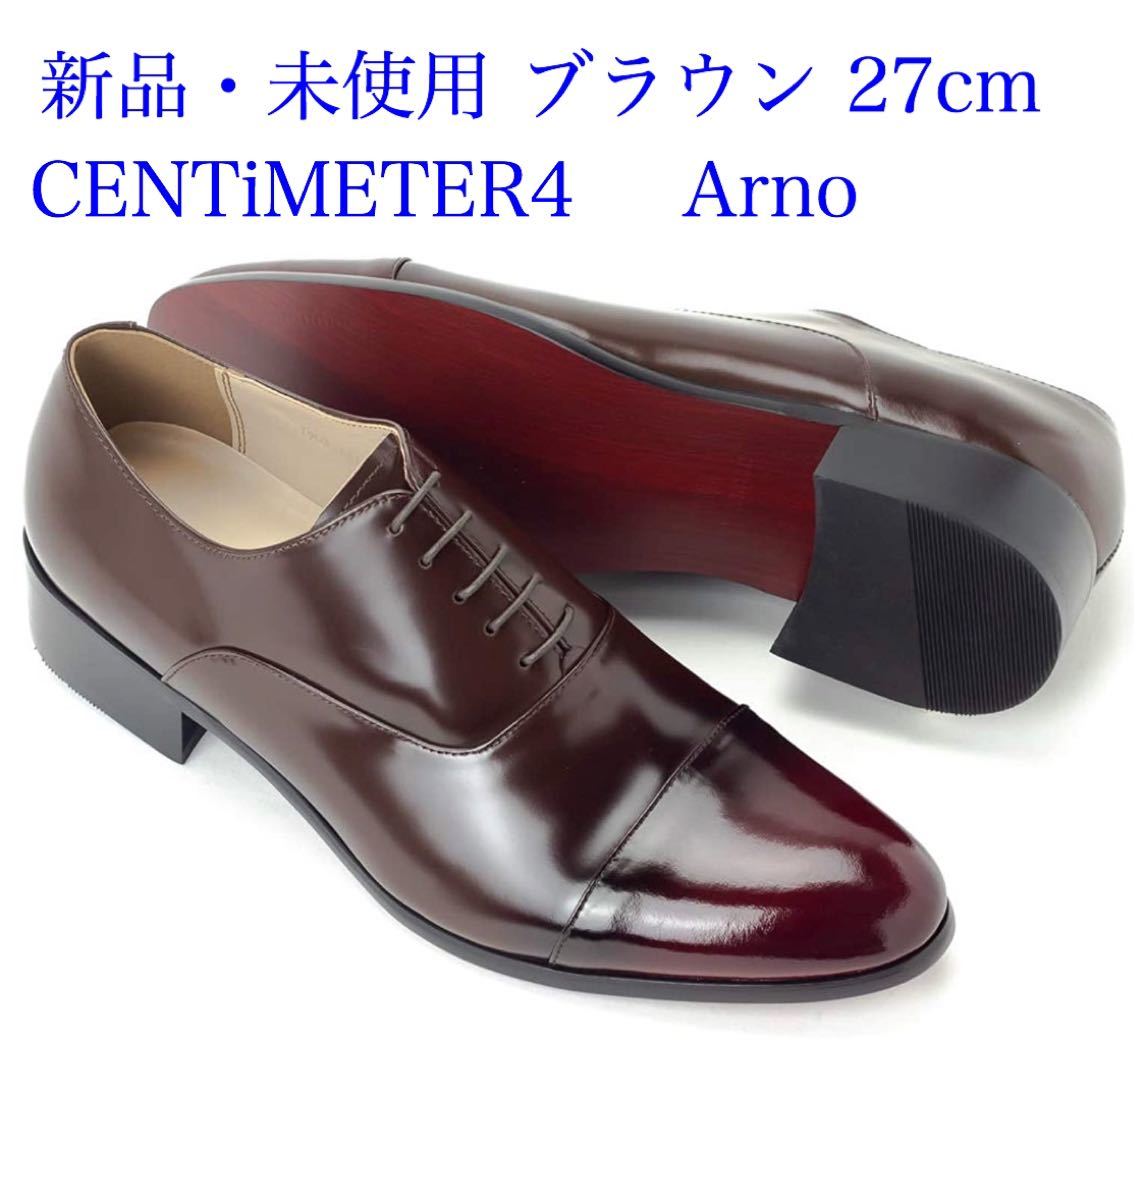 ビジネスシューズ CENTiMETER4革靴 本革 Arno ブラウン 27cm